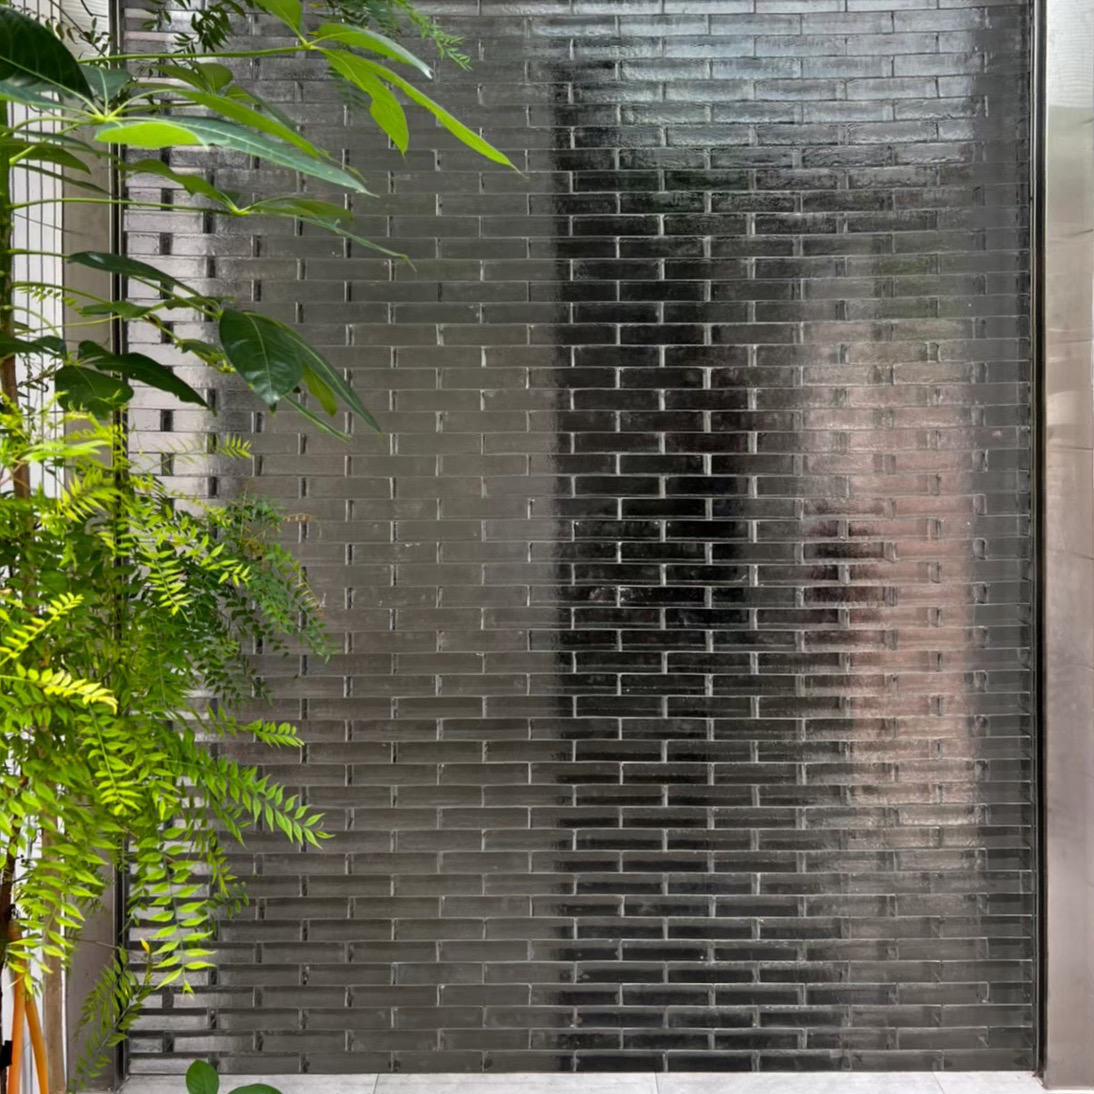 施工建材：水波紋玻璃磚  ｜
施工工法：平砌式 ｜
顏色：透明